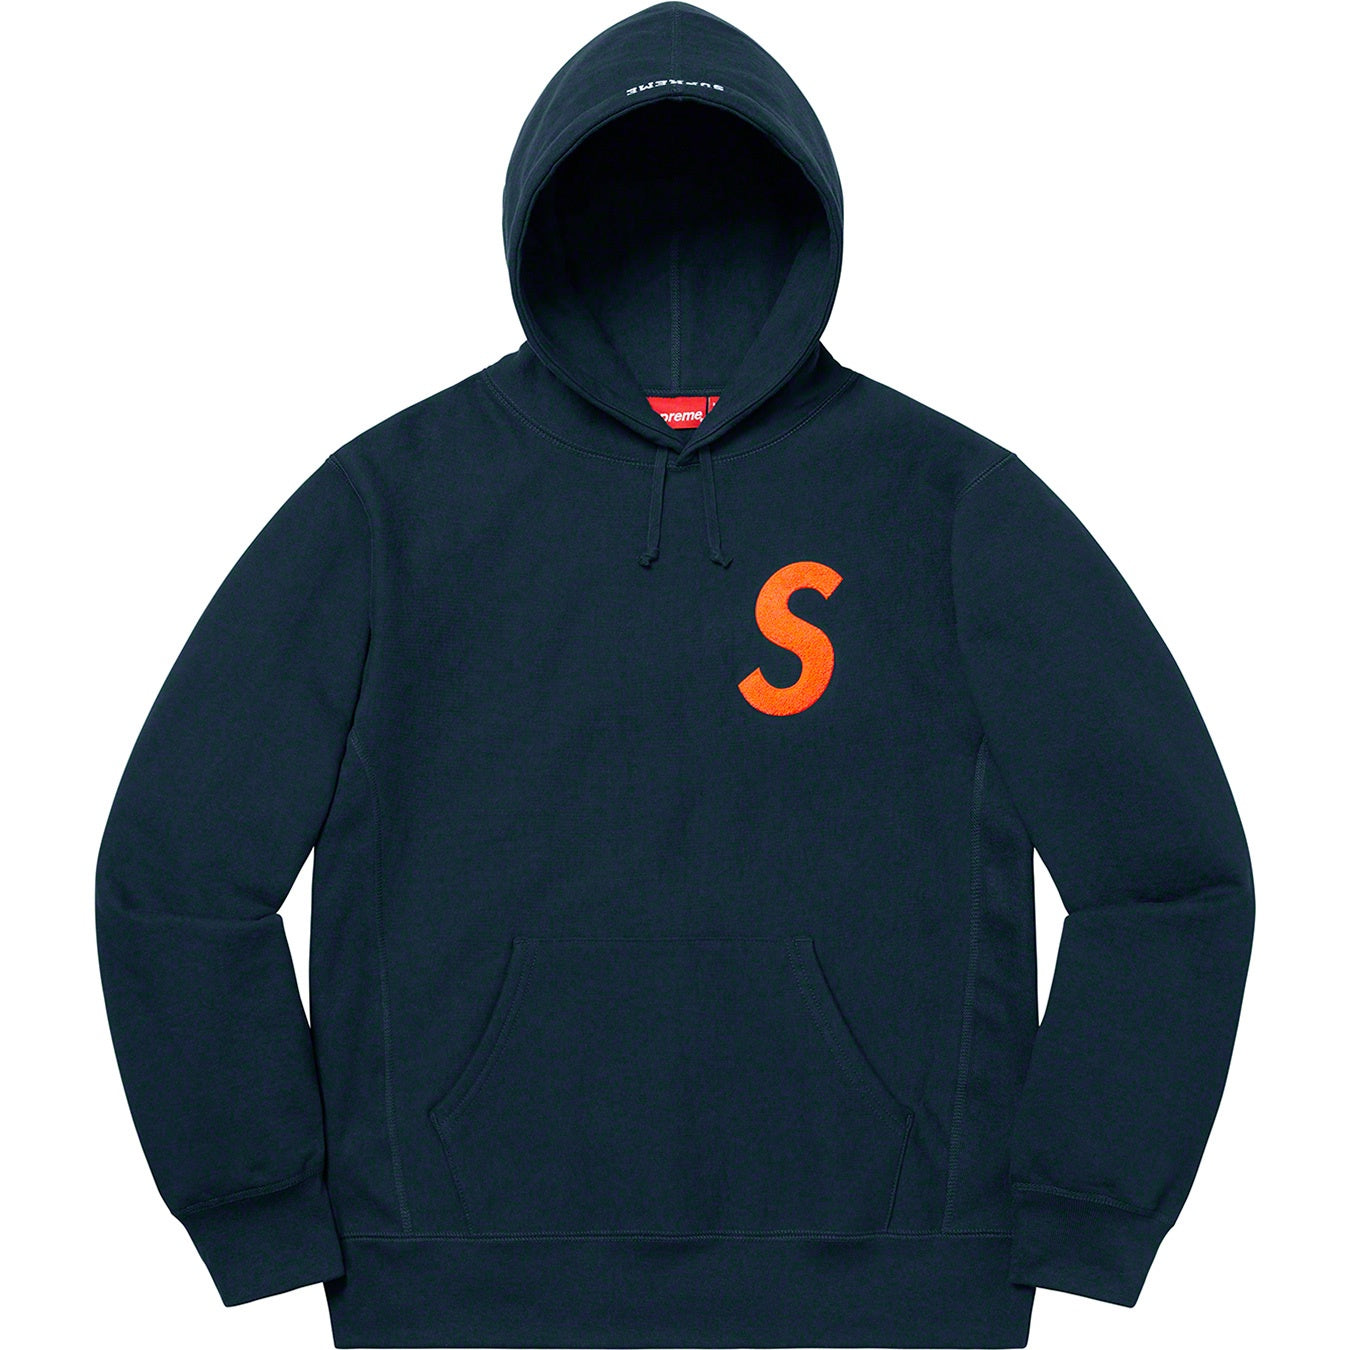 19AW supreme S Logo Hooded sweatshirt